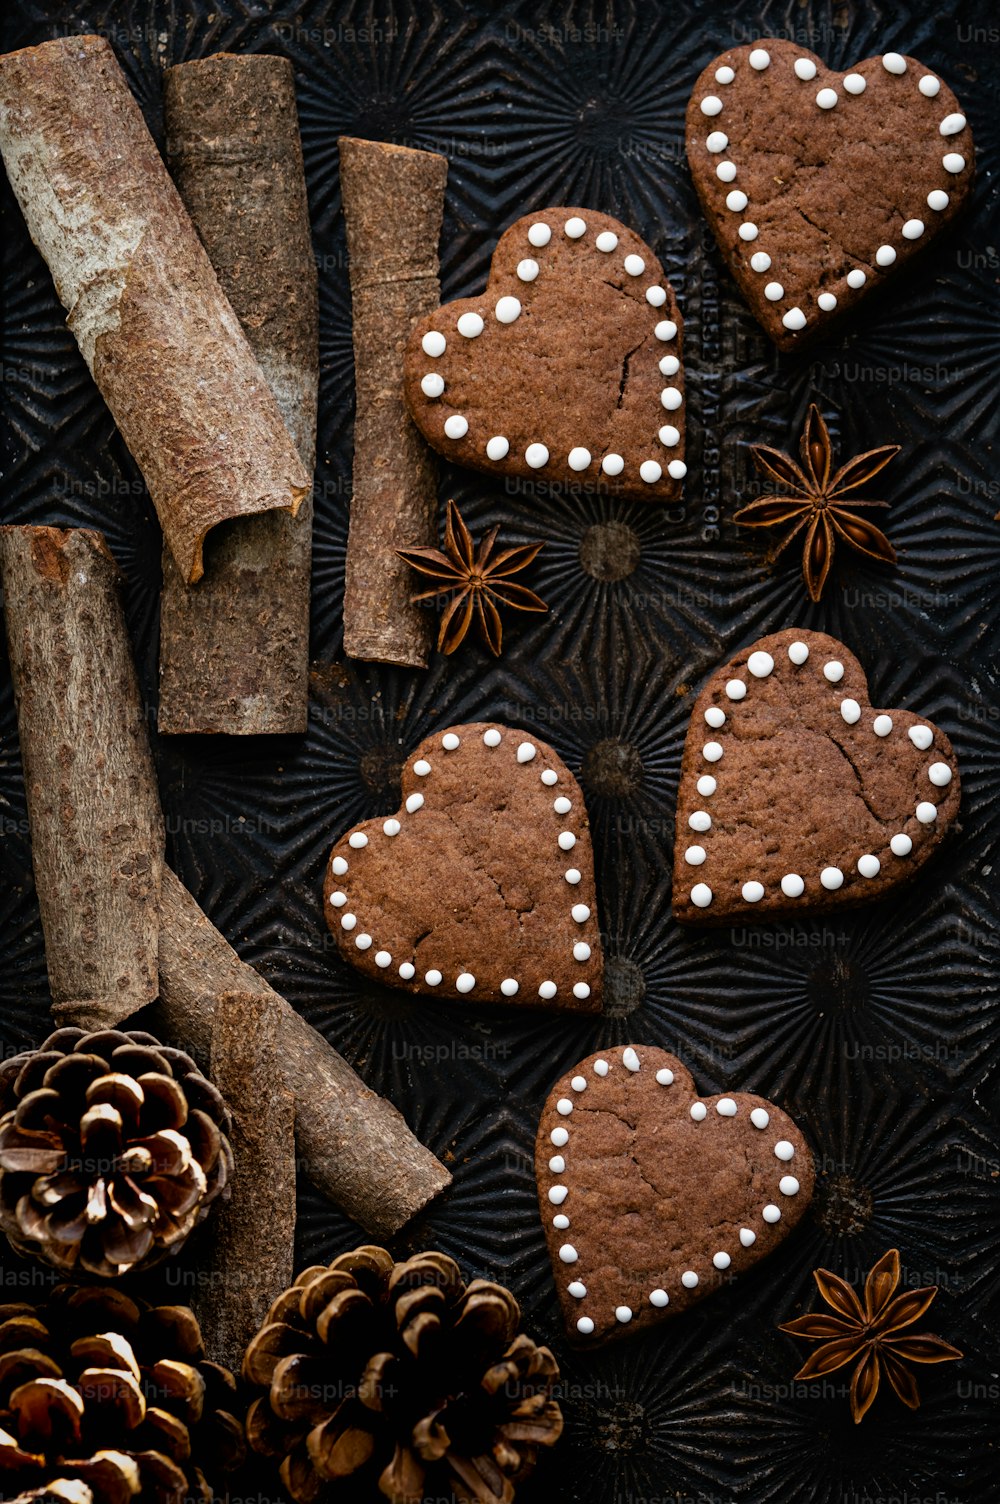 Un grupo de galletas decoradas